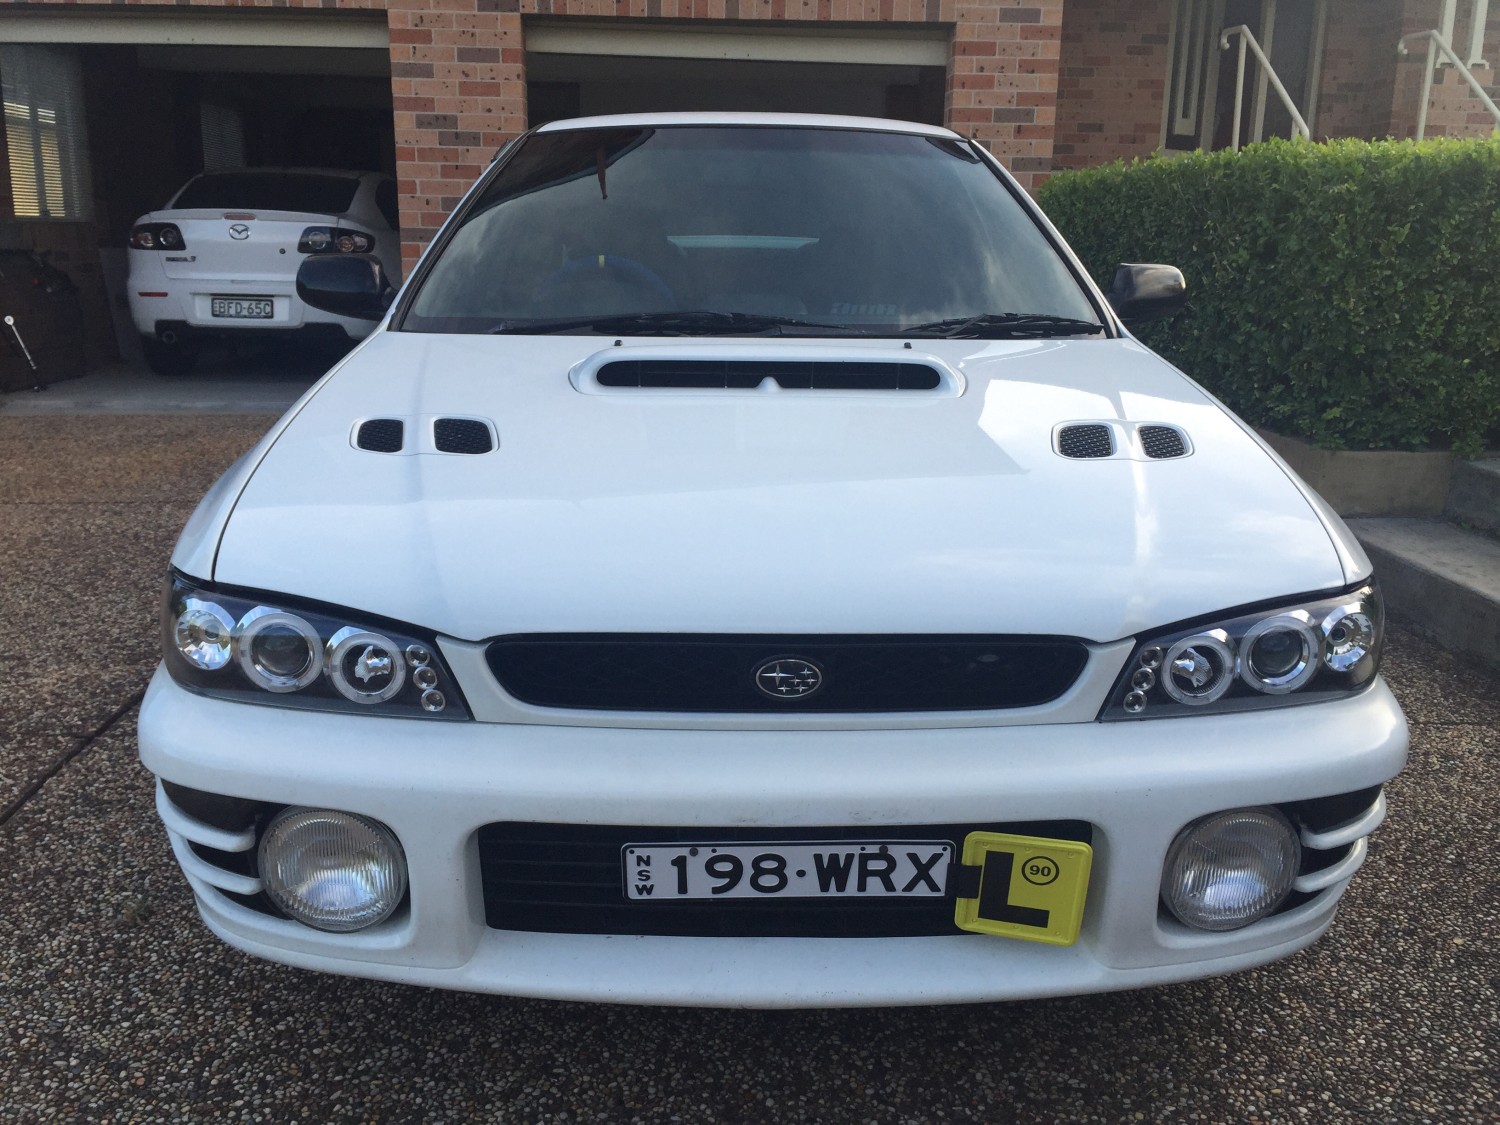 1998 Subaru RX - AdamFlood - Shannons Club